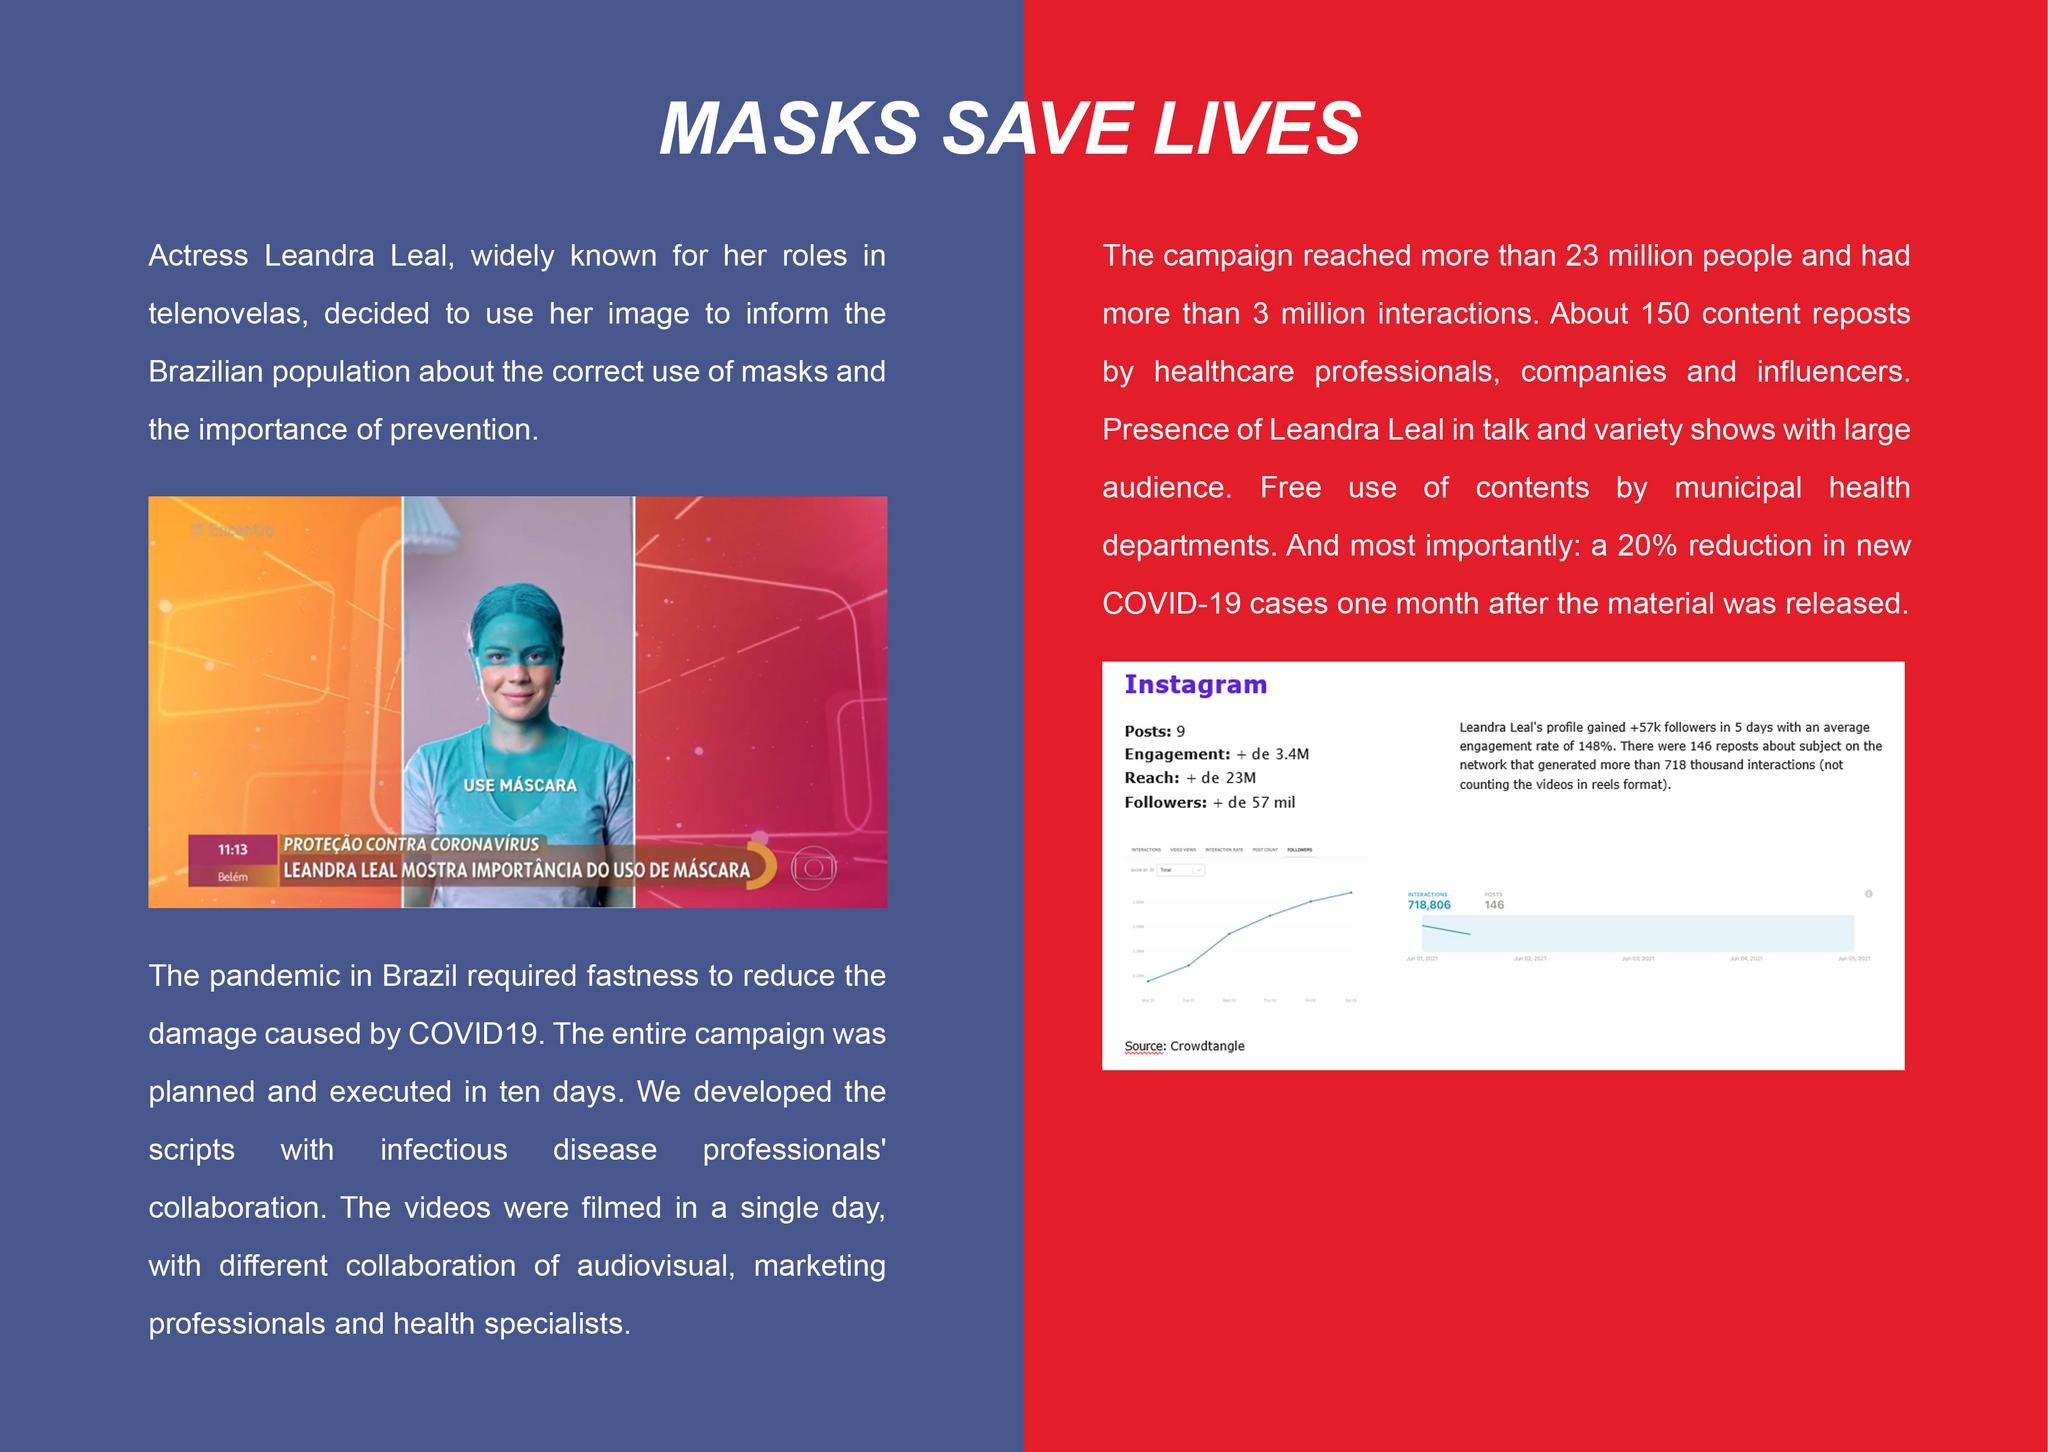 Masks save lives